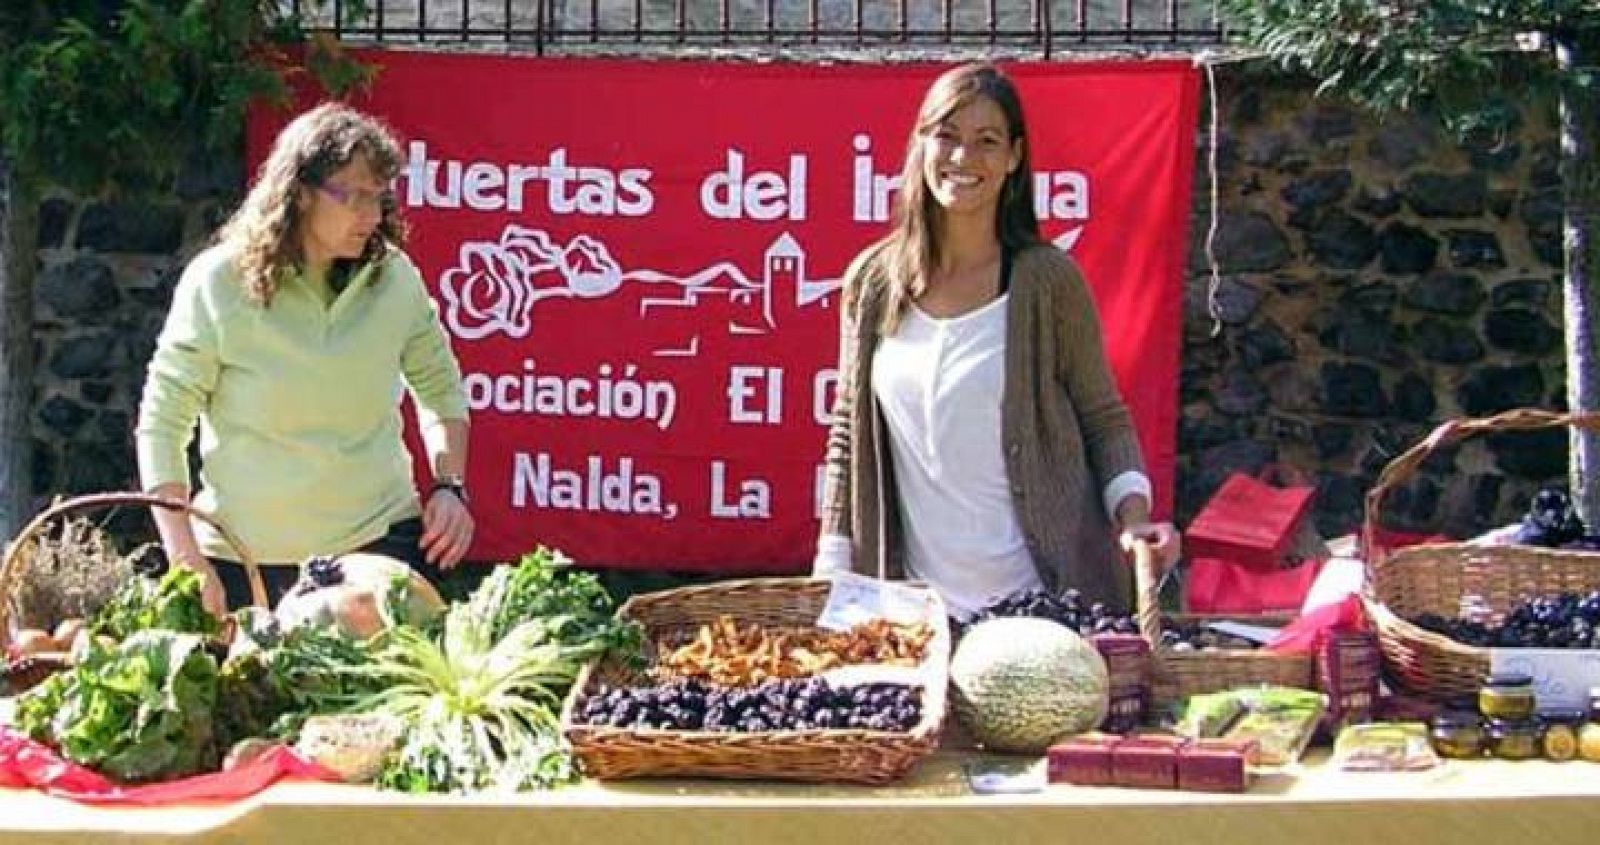 La Asociación El Colletero gestiona el 'club de consumo' de las huertas del Iregua.